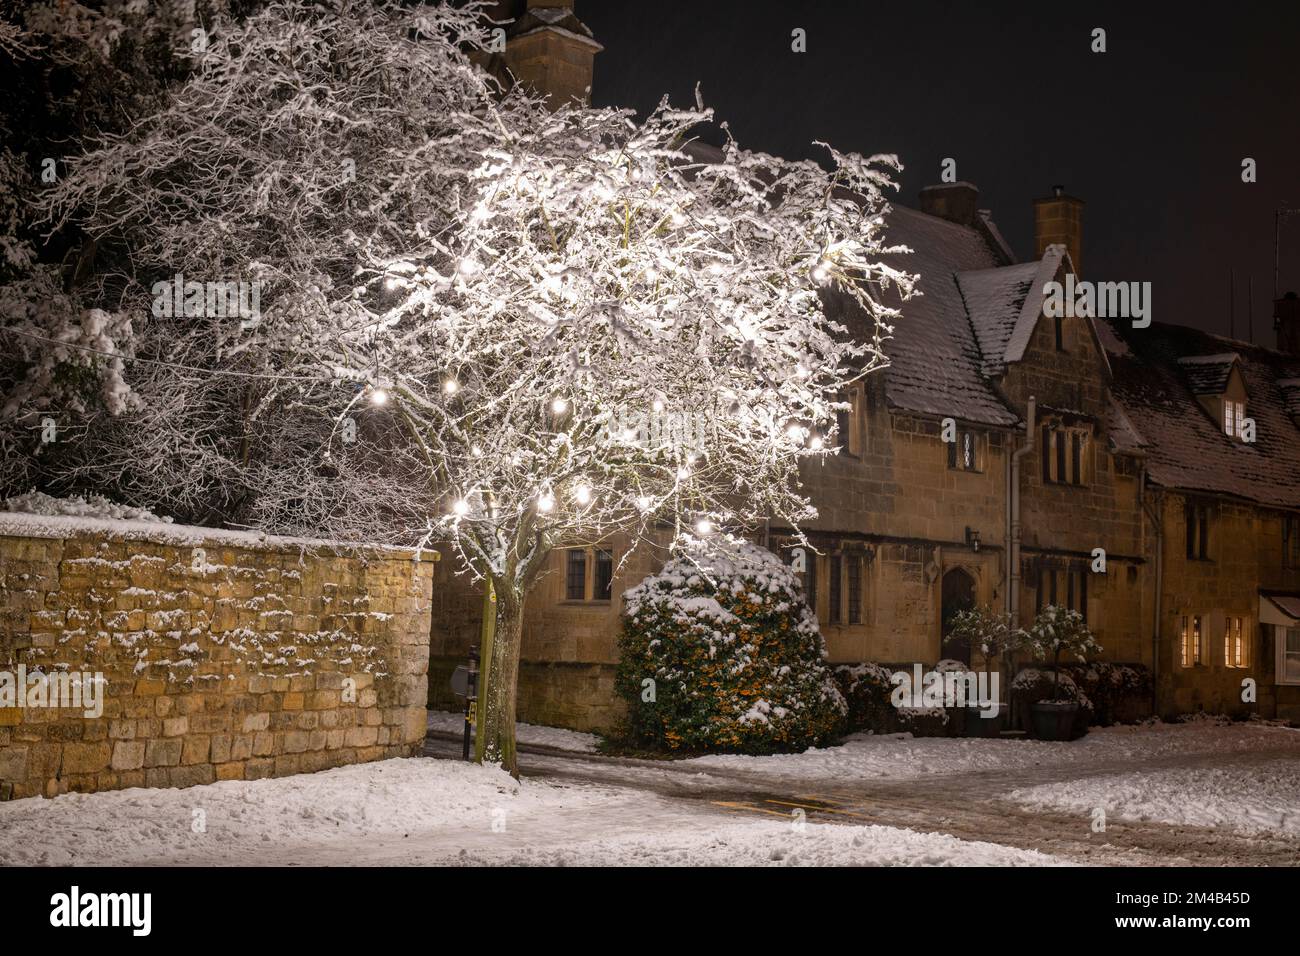 Broadway-Dorf und Weihnachtsbäume mit hellen Dekorationen bei Nacht im Schnee. Broadway, Cotswolds, Worcestershire, England Stockfoto